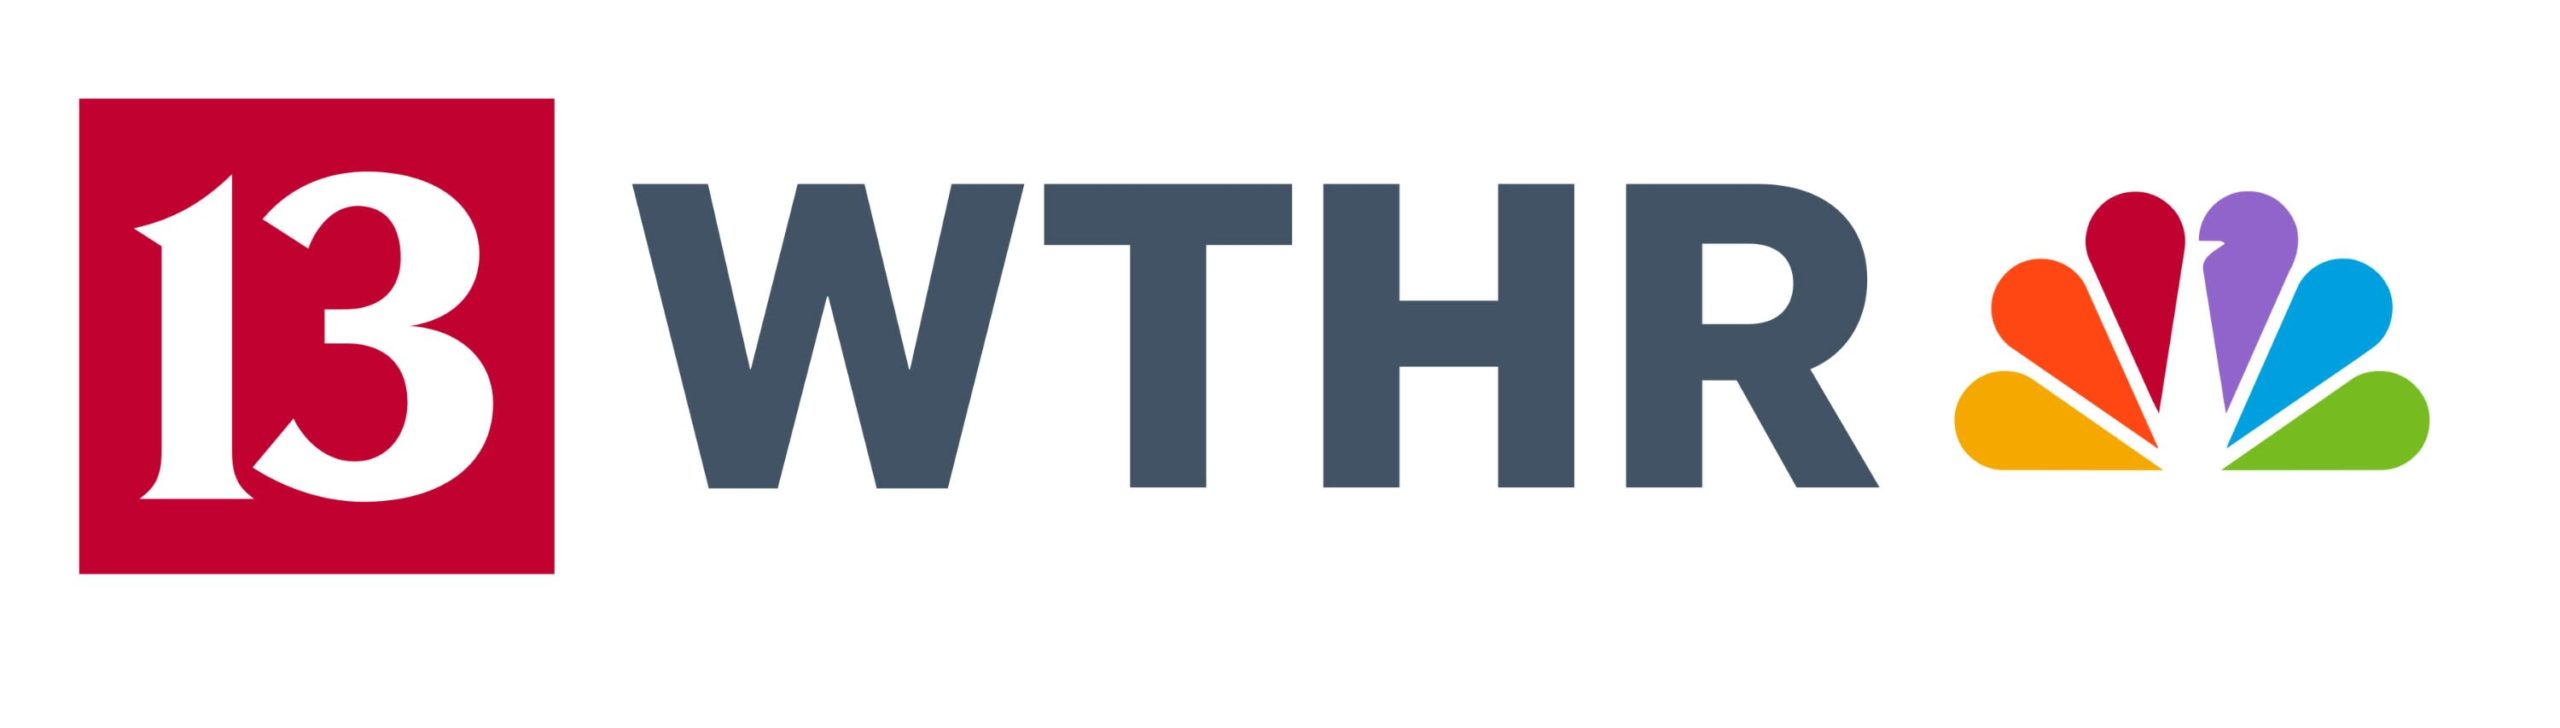 WTHR 13 logo